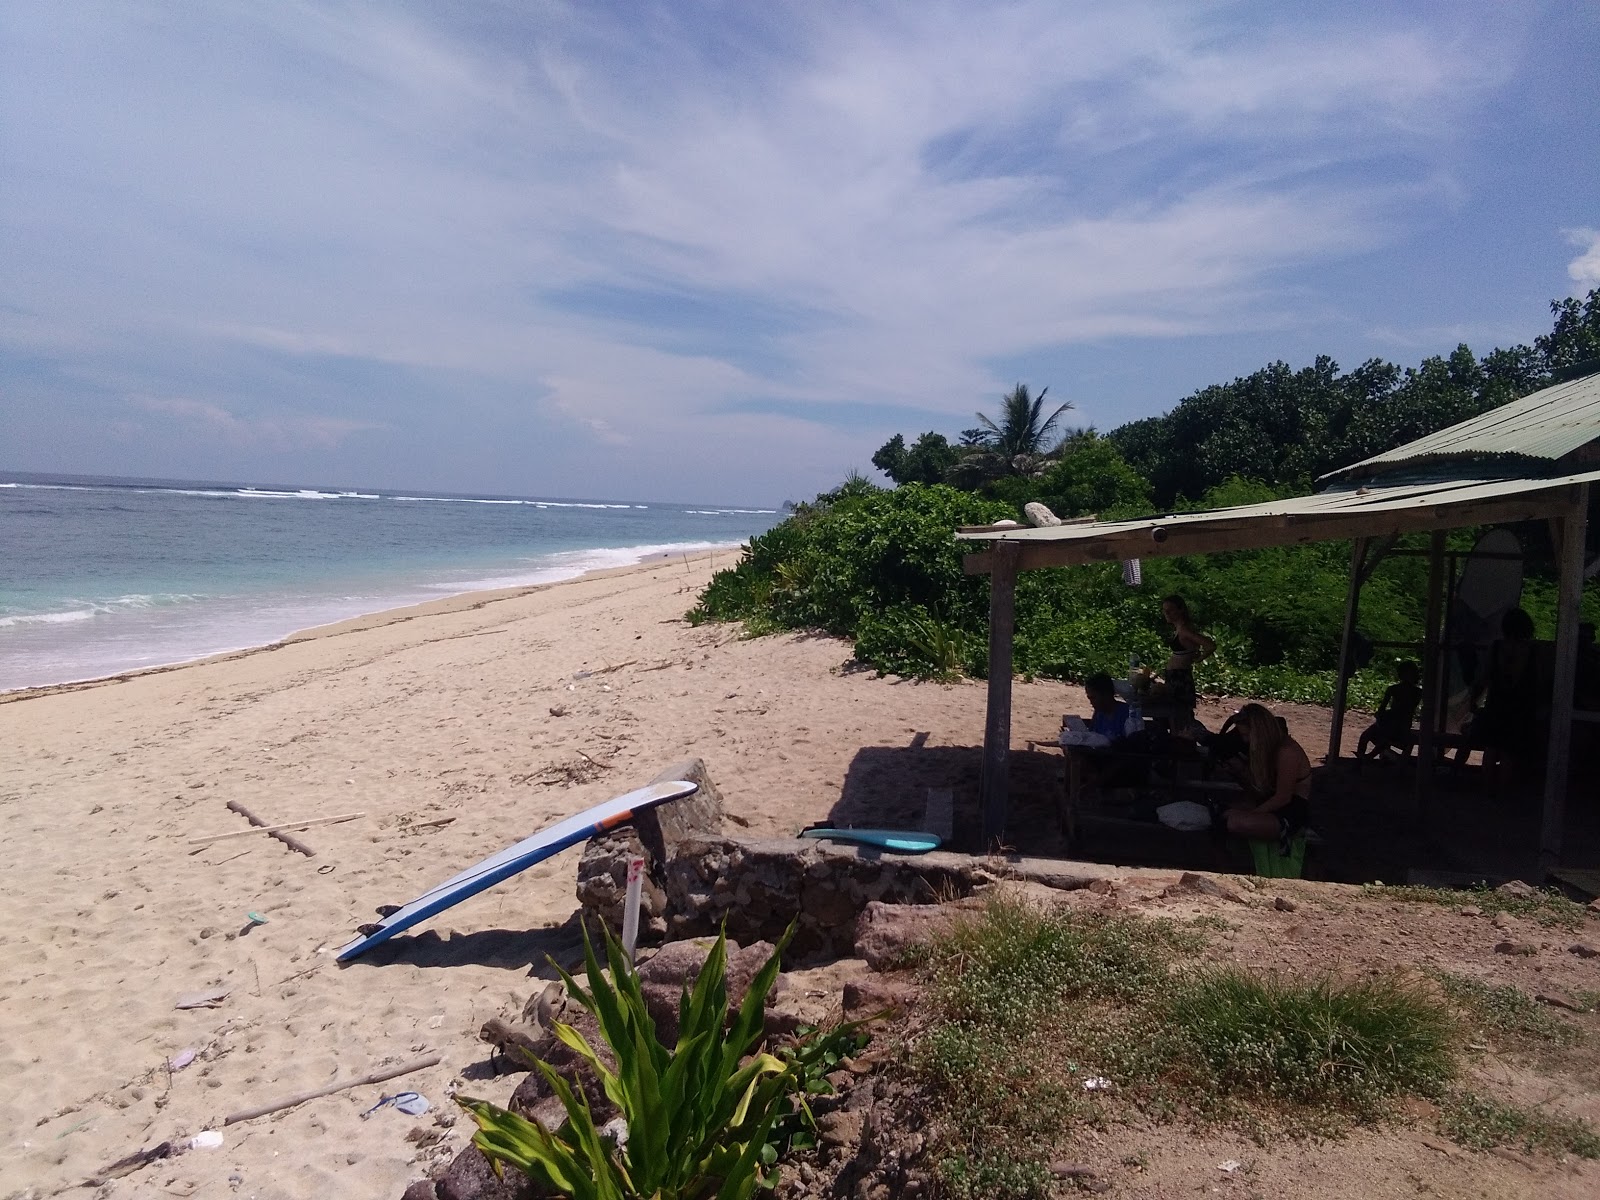 Fotografie cu Serangan Beach cu nivelul de curățenie in medie